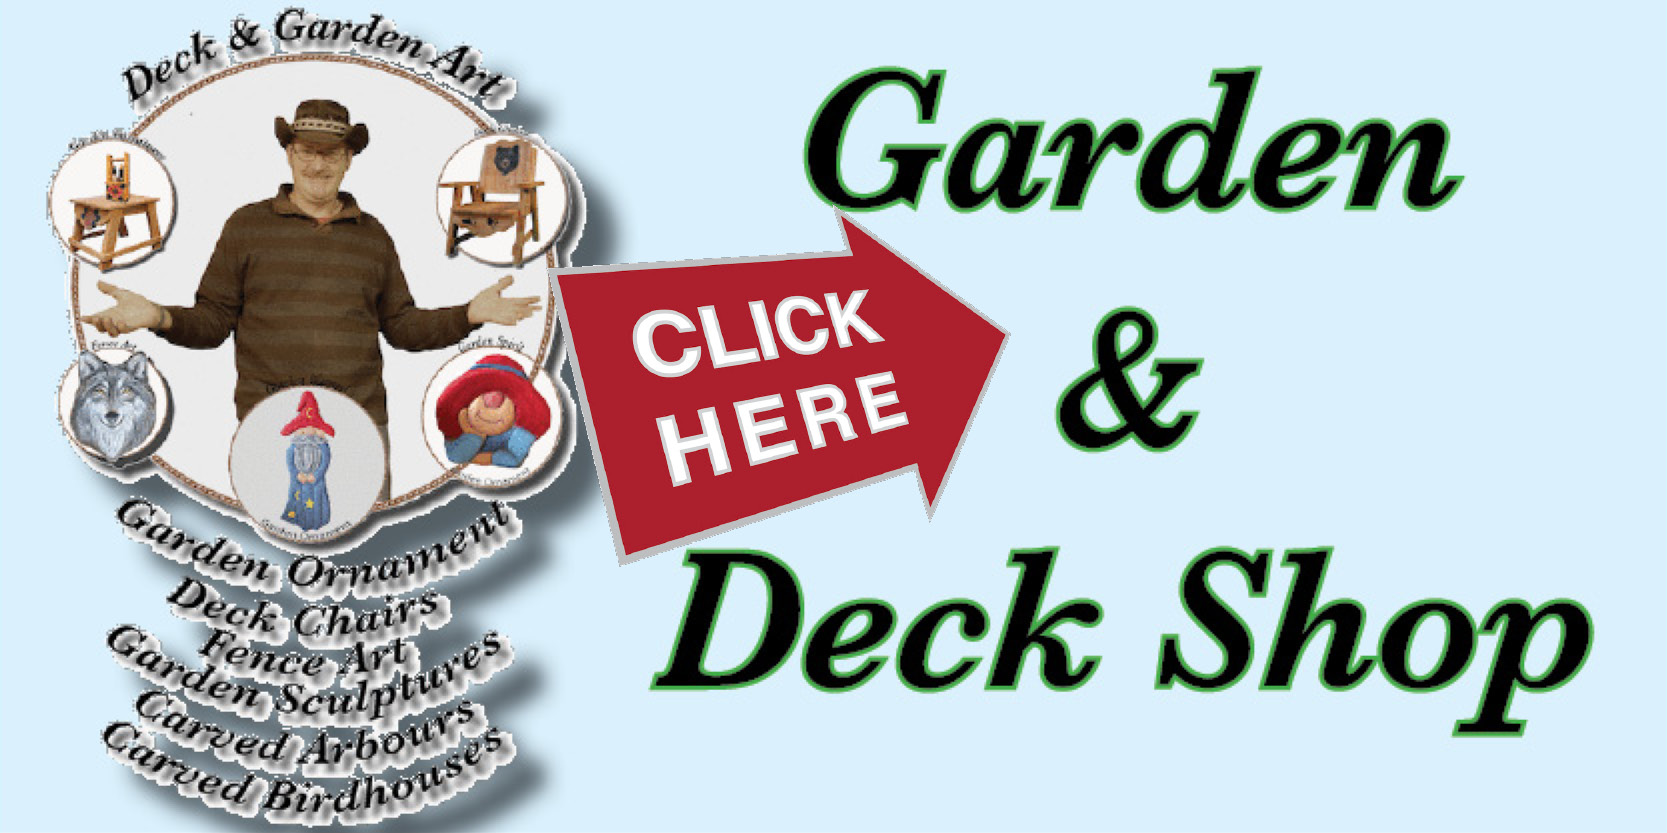 DW Garden and Deck Shop, deck, garden sculptures, deck chairs, garden art 